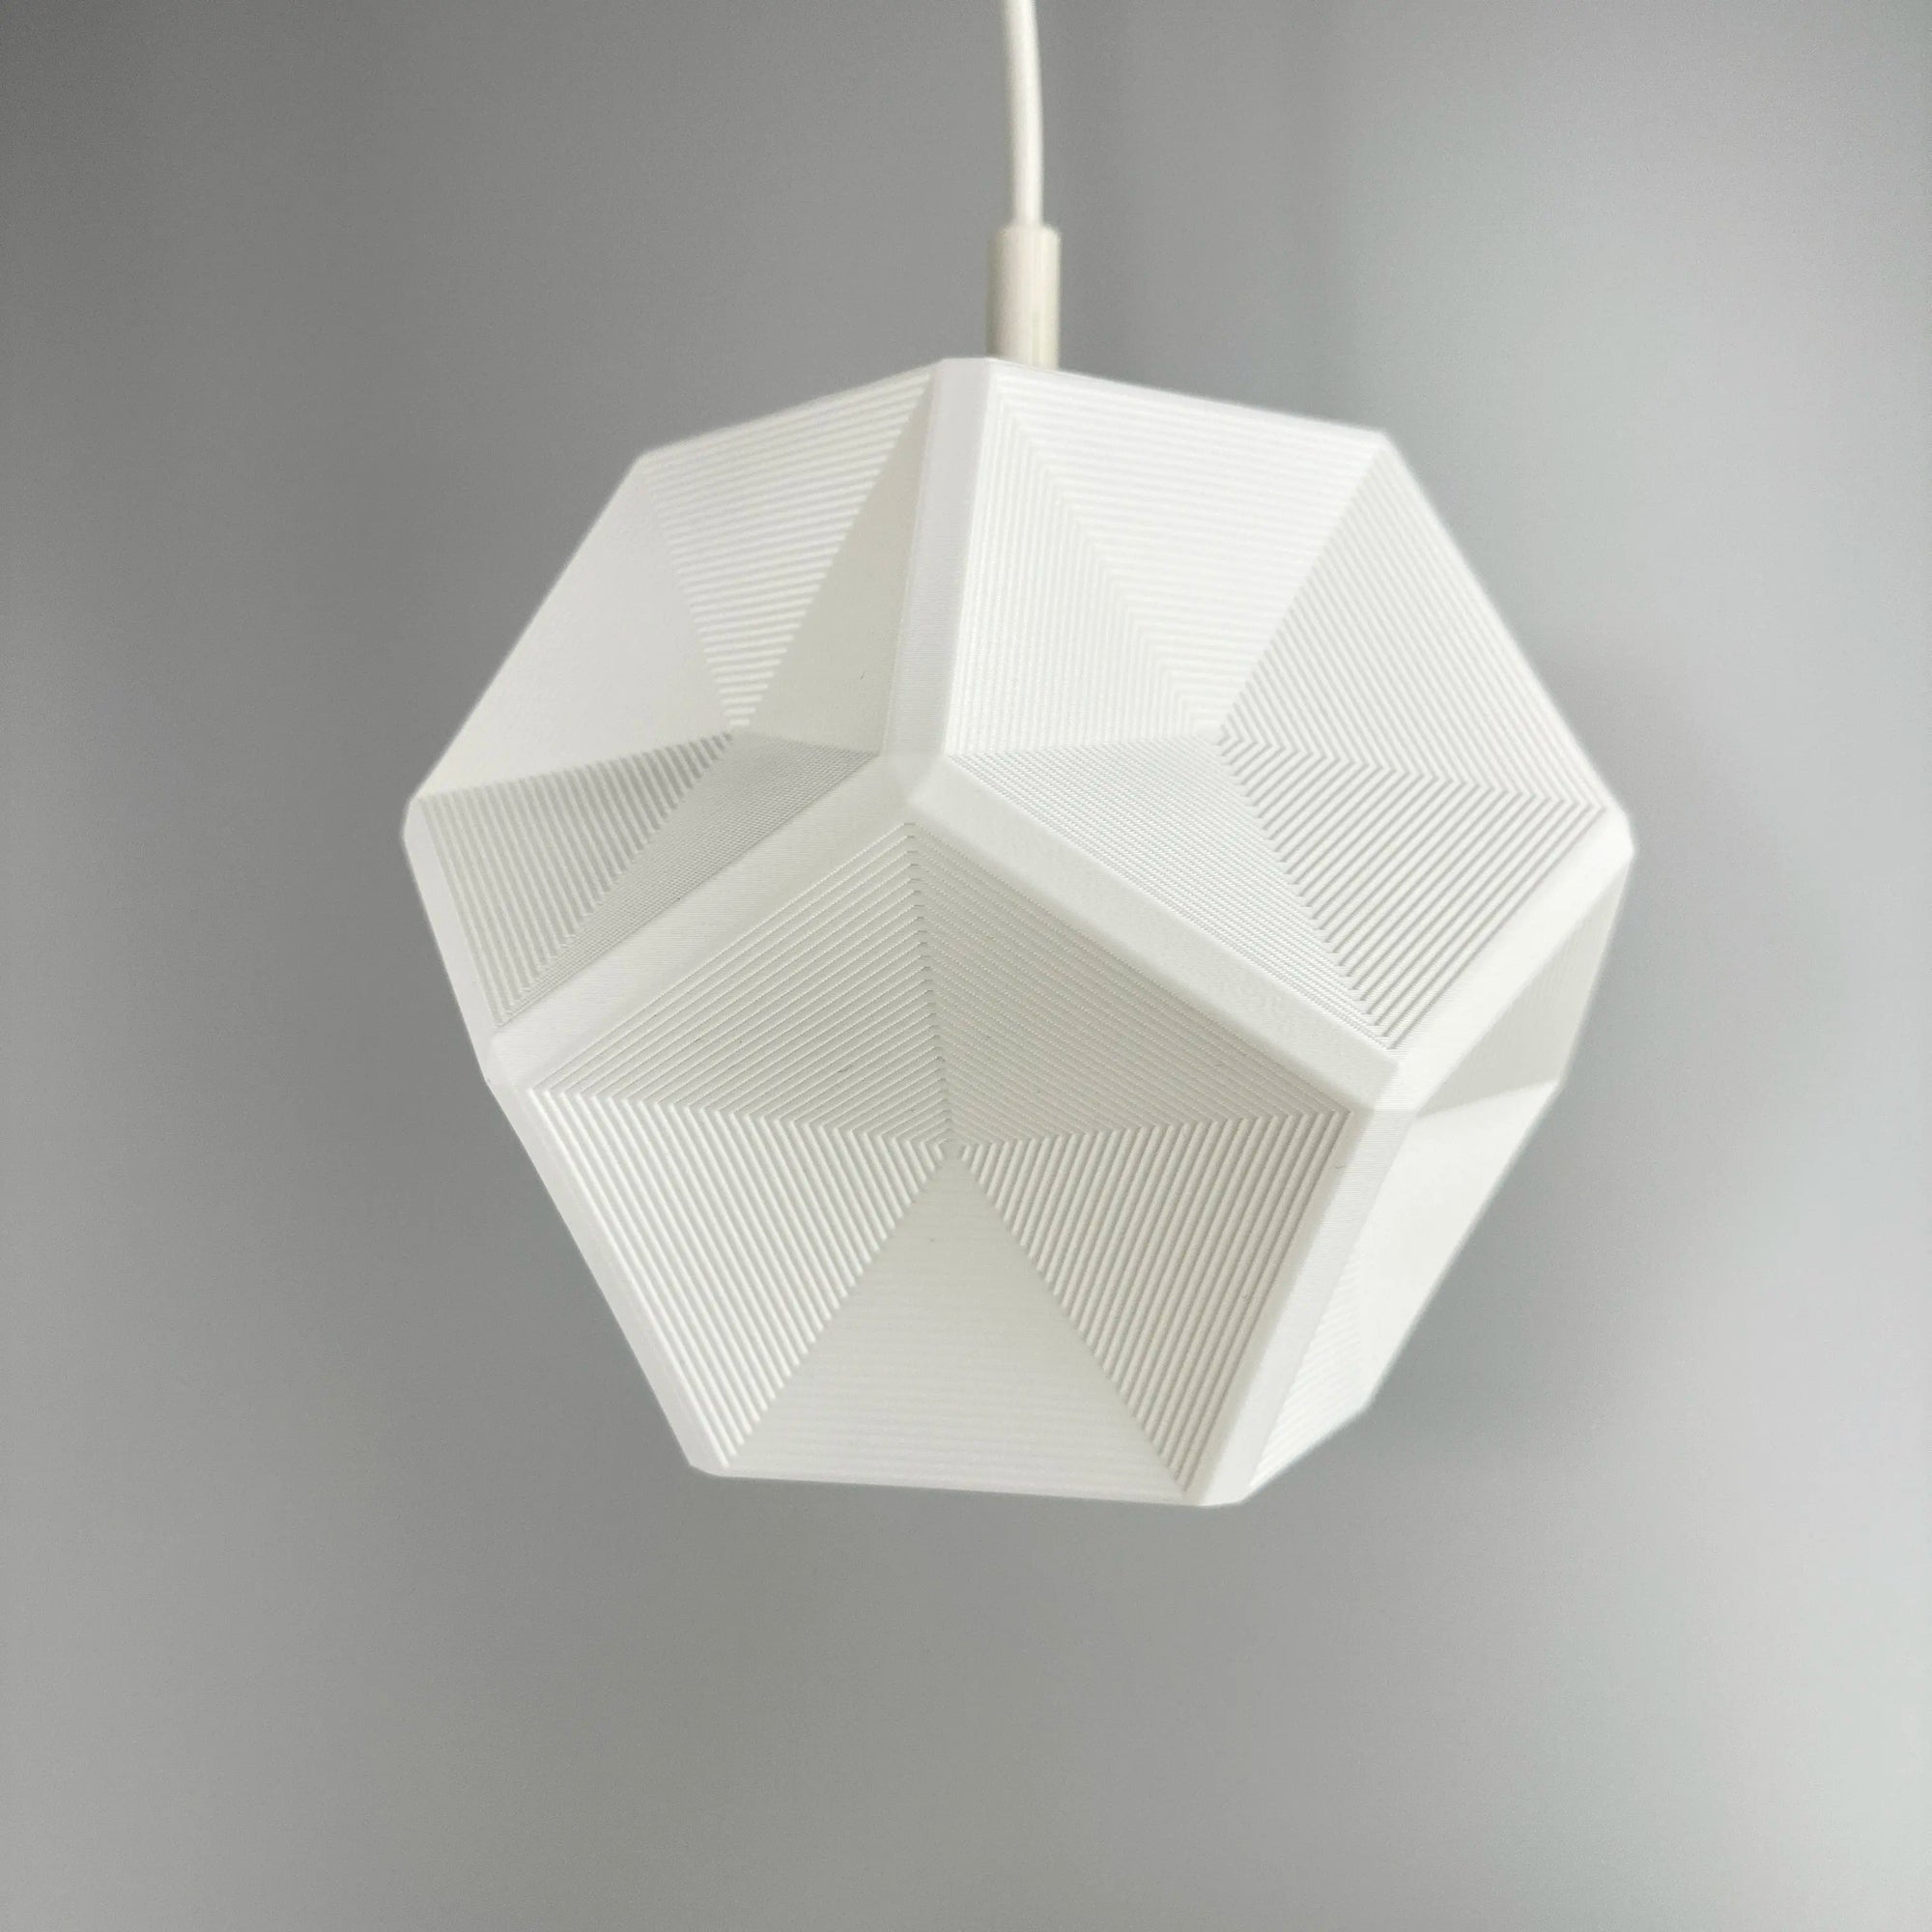 Pende Lampenschirm – einzigartiges und modernes Design